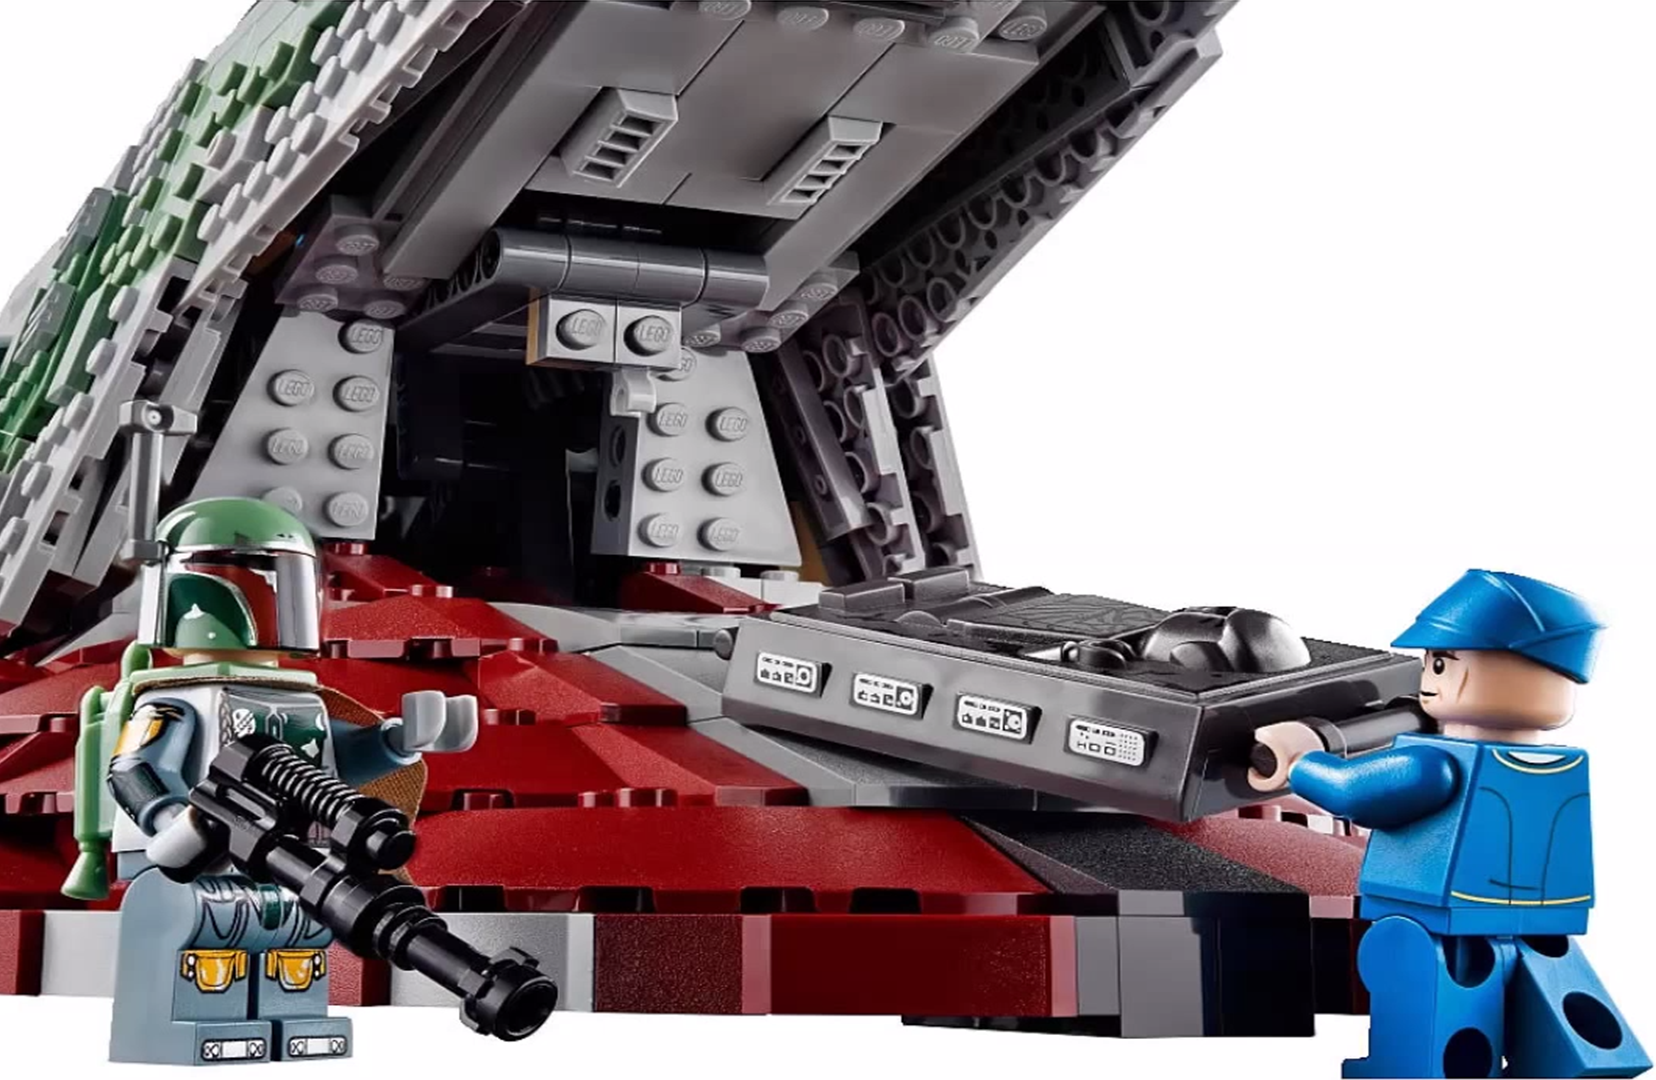 Lego Star Clone Wars UCS 75060 Slave I Boba Fett The Empire Strikes Back V NEW 